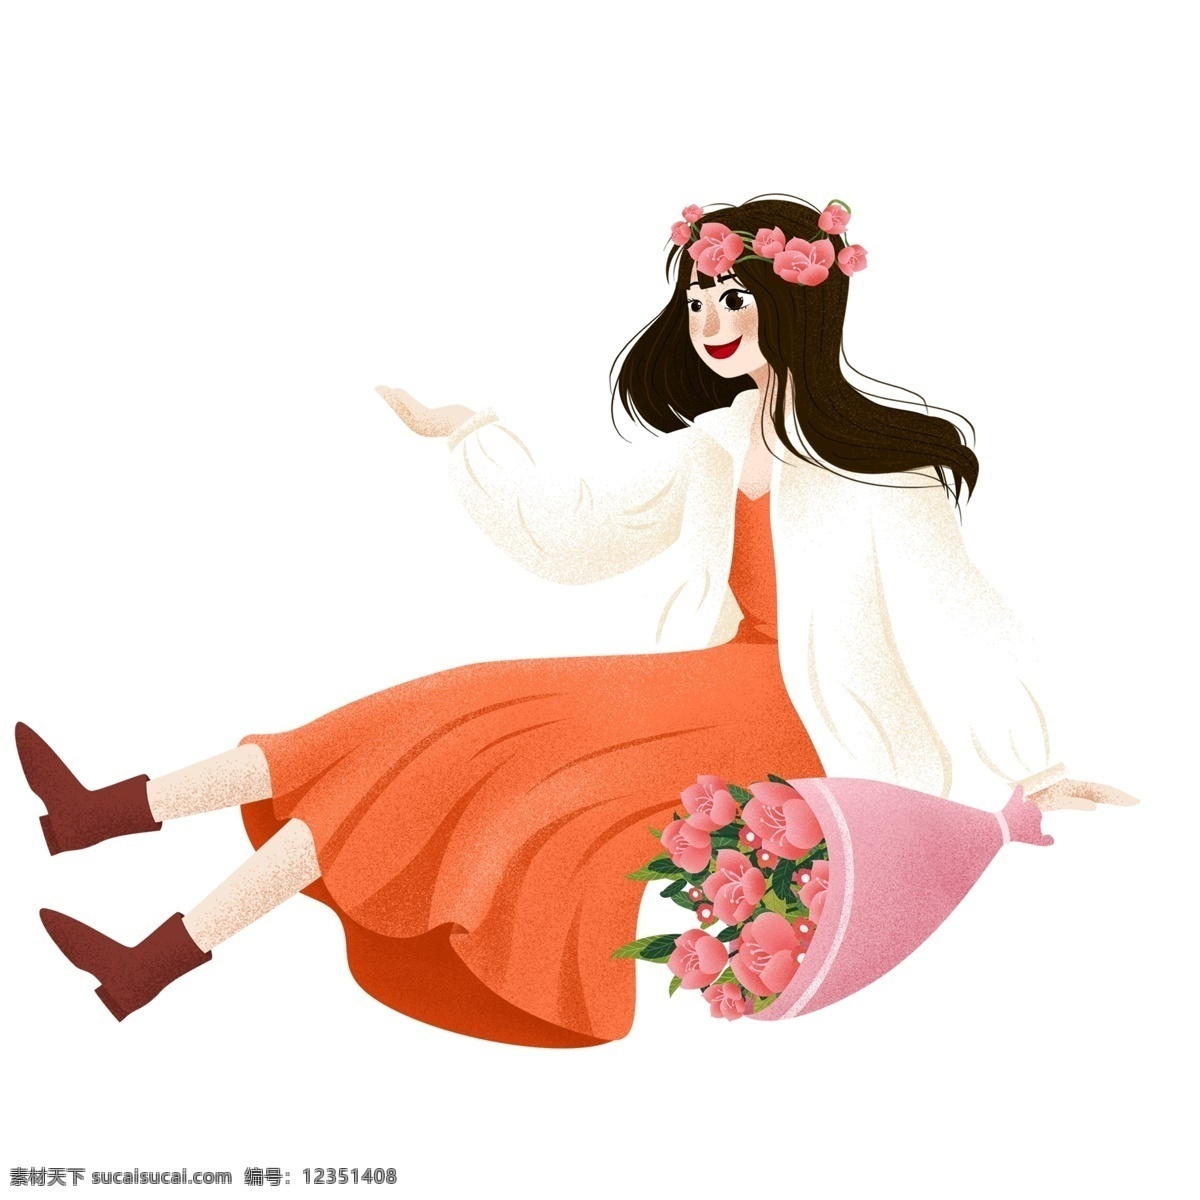 清新 唯美 束 花 坐在 地上 女孩 文艺 手绘 温馨 女生 少女 鲜花 插画